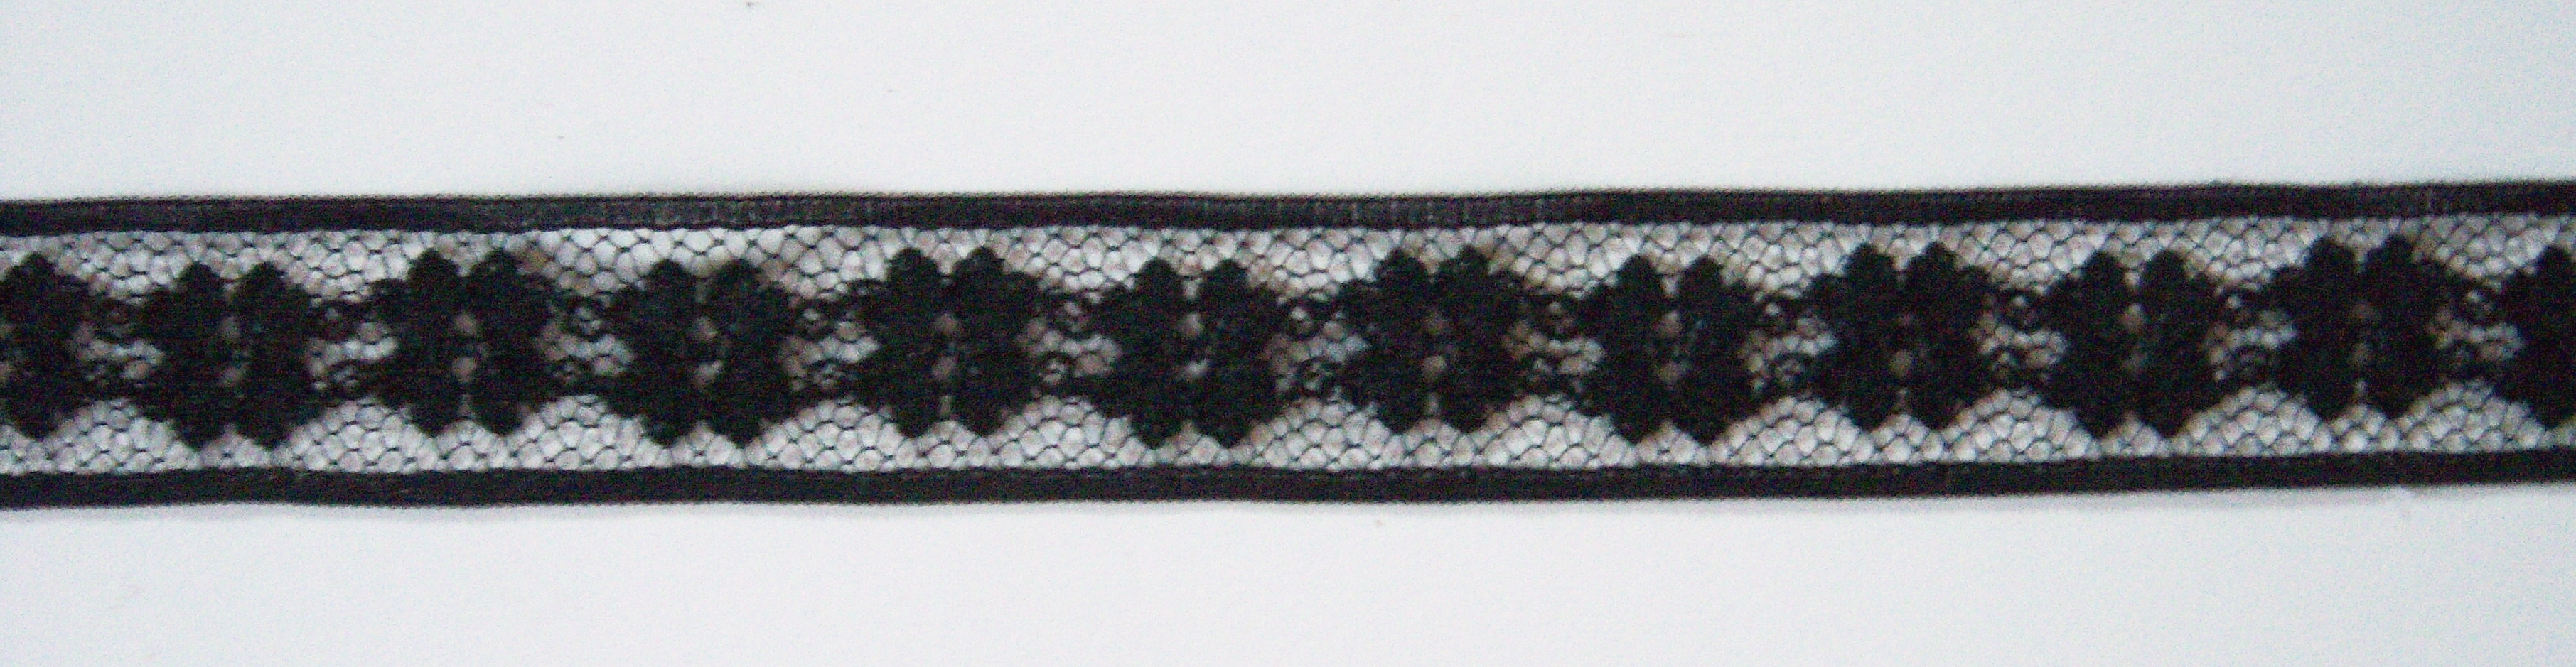 Black Nylon 3/4" Lace